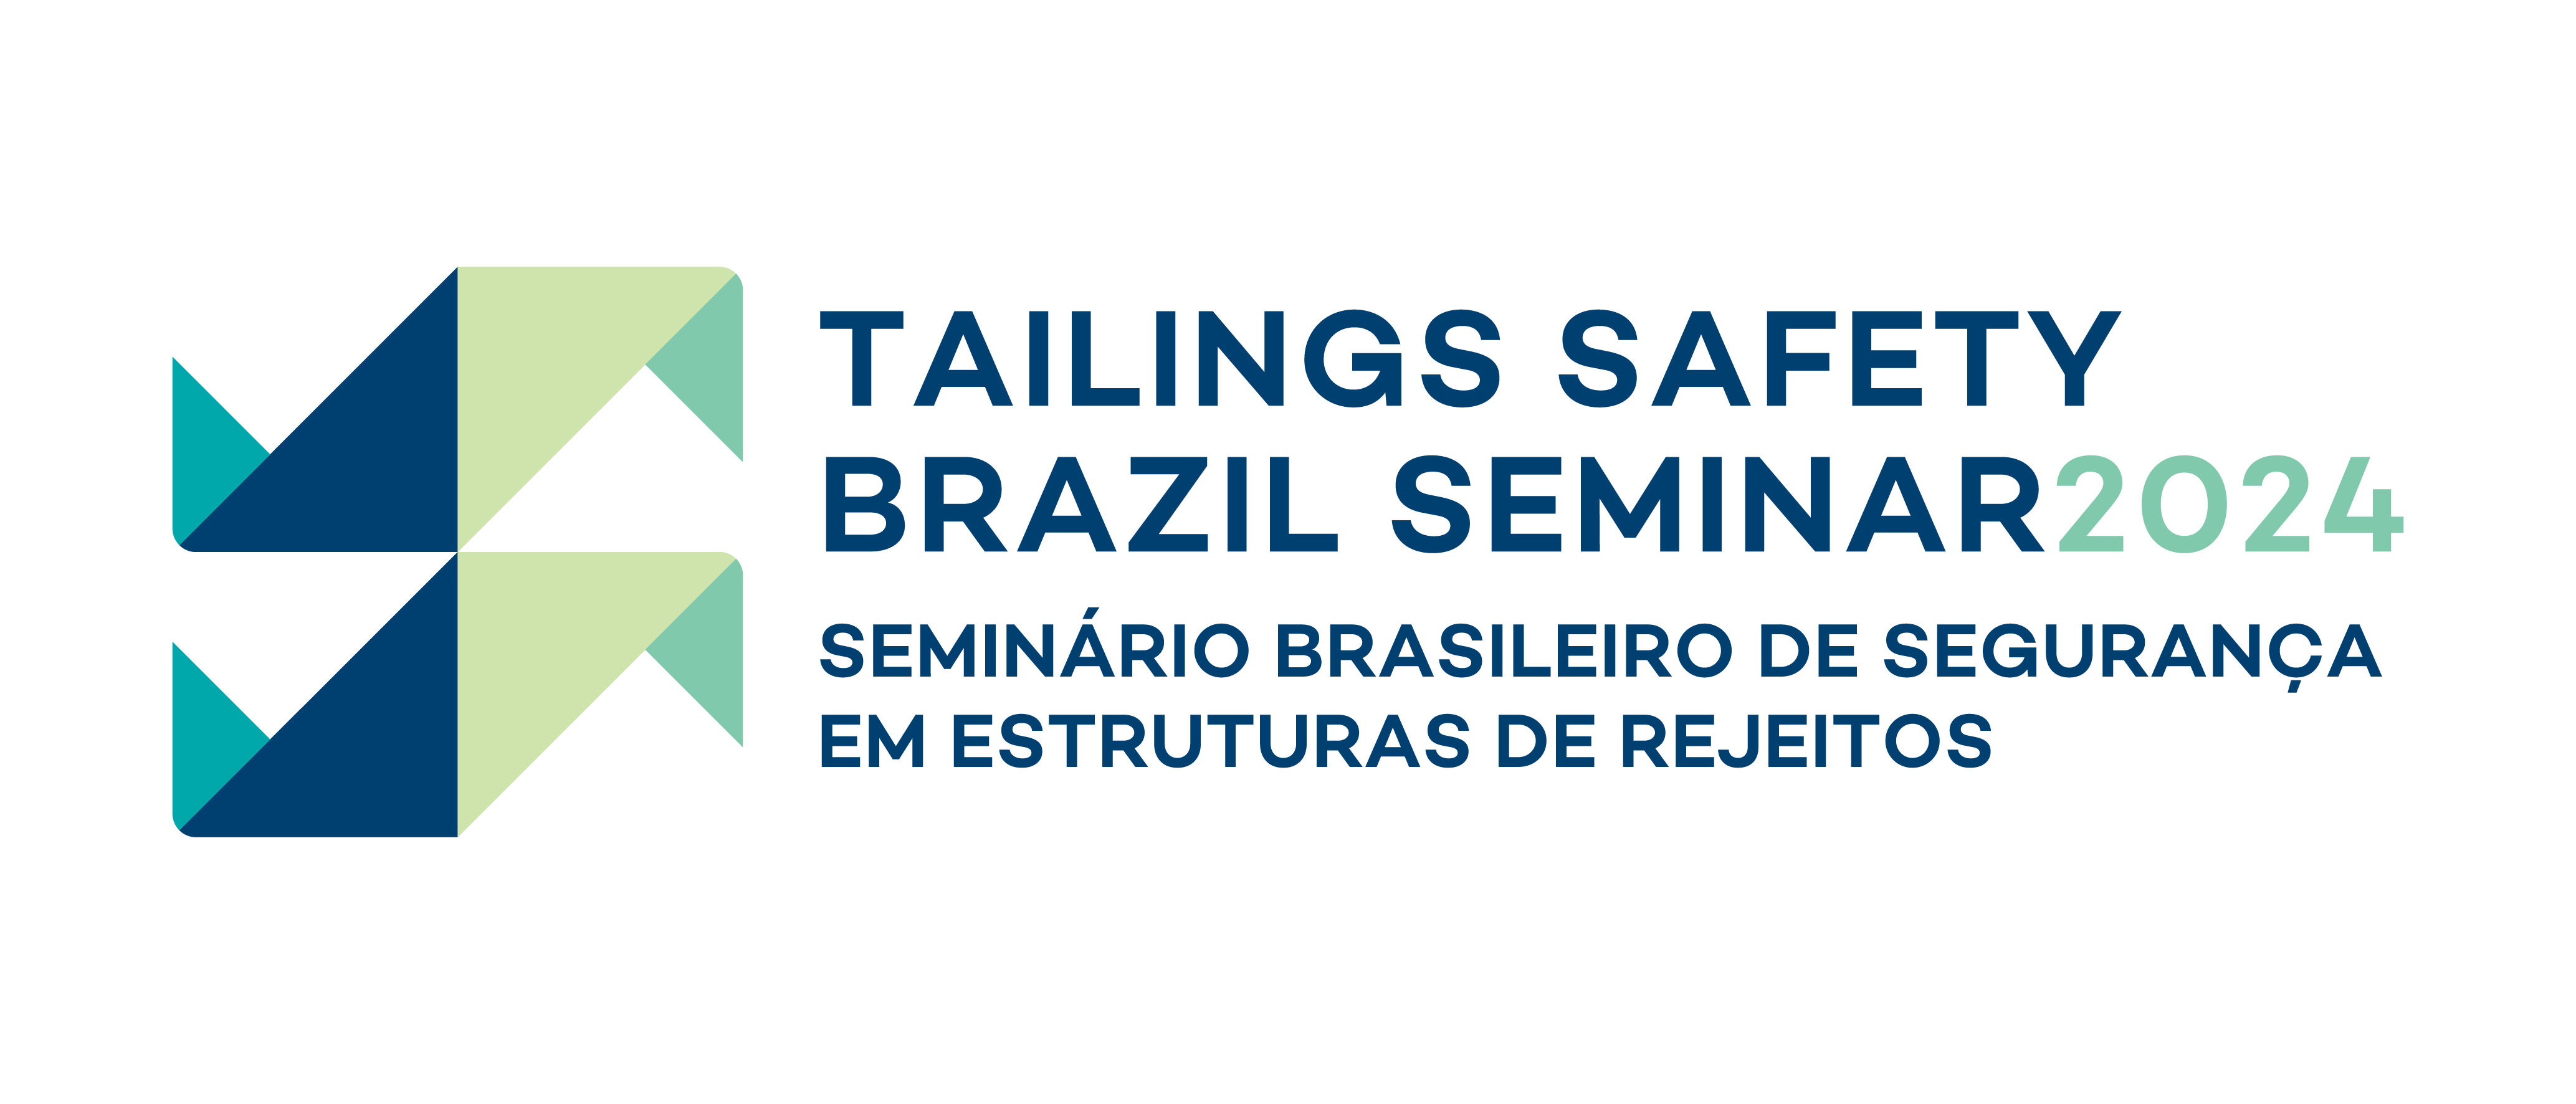 Seminário Brasileiro de Segurança em Estruturas de Rejeitos